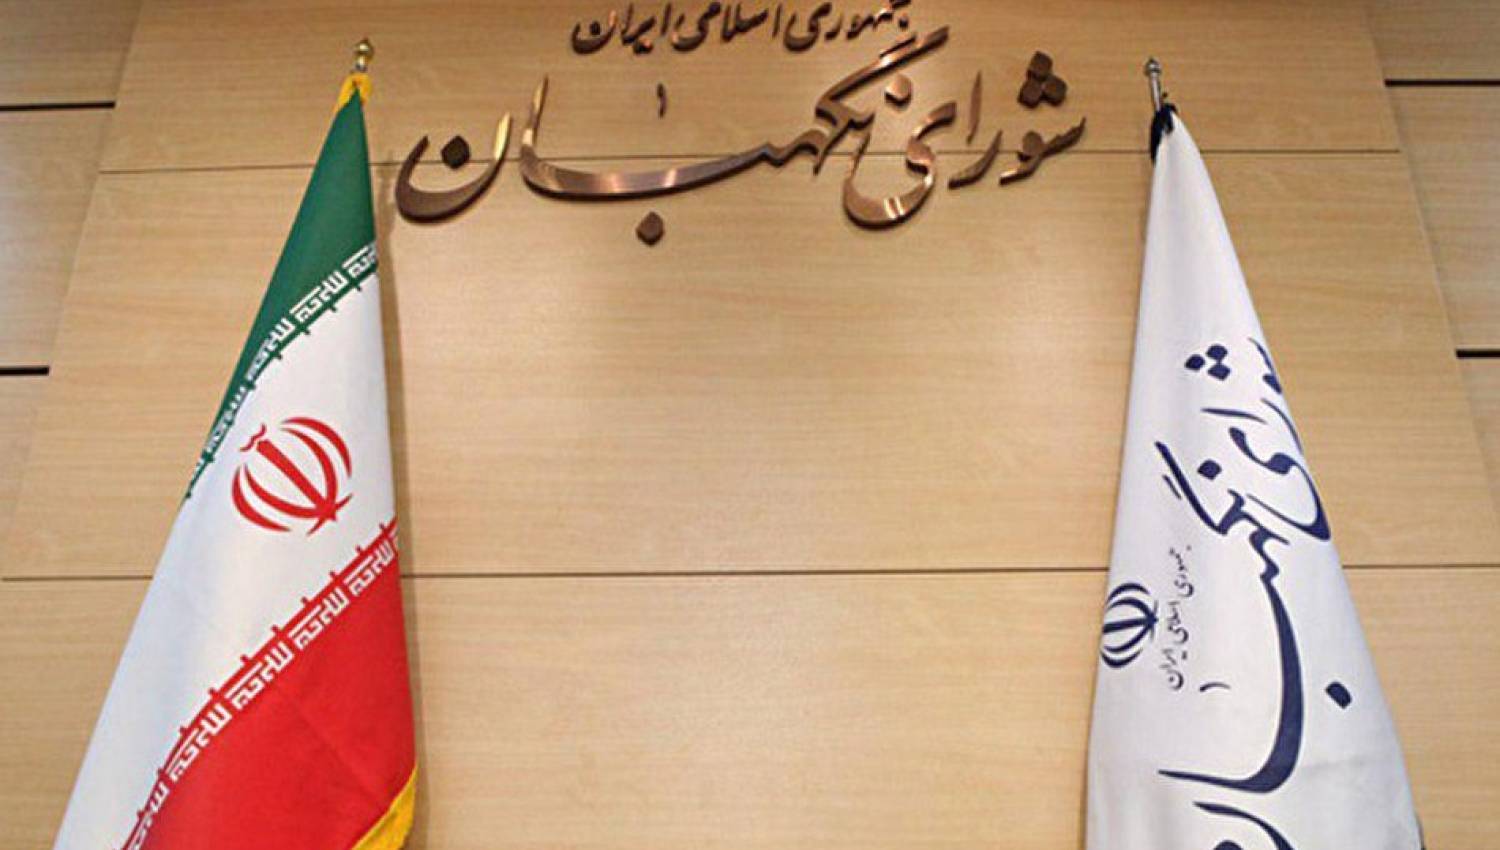 מה תפקיד מועצת שומרי החוקה בבחירות האיראניות?